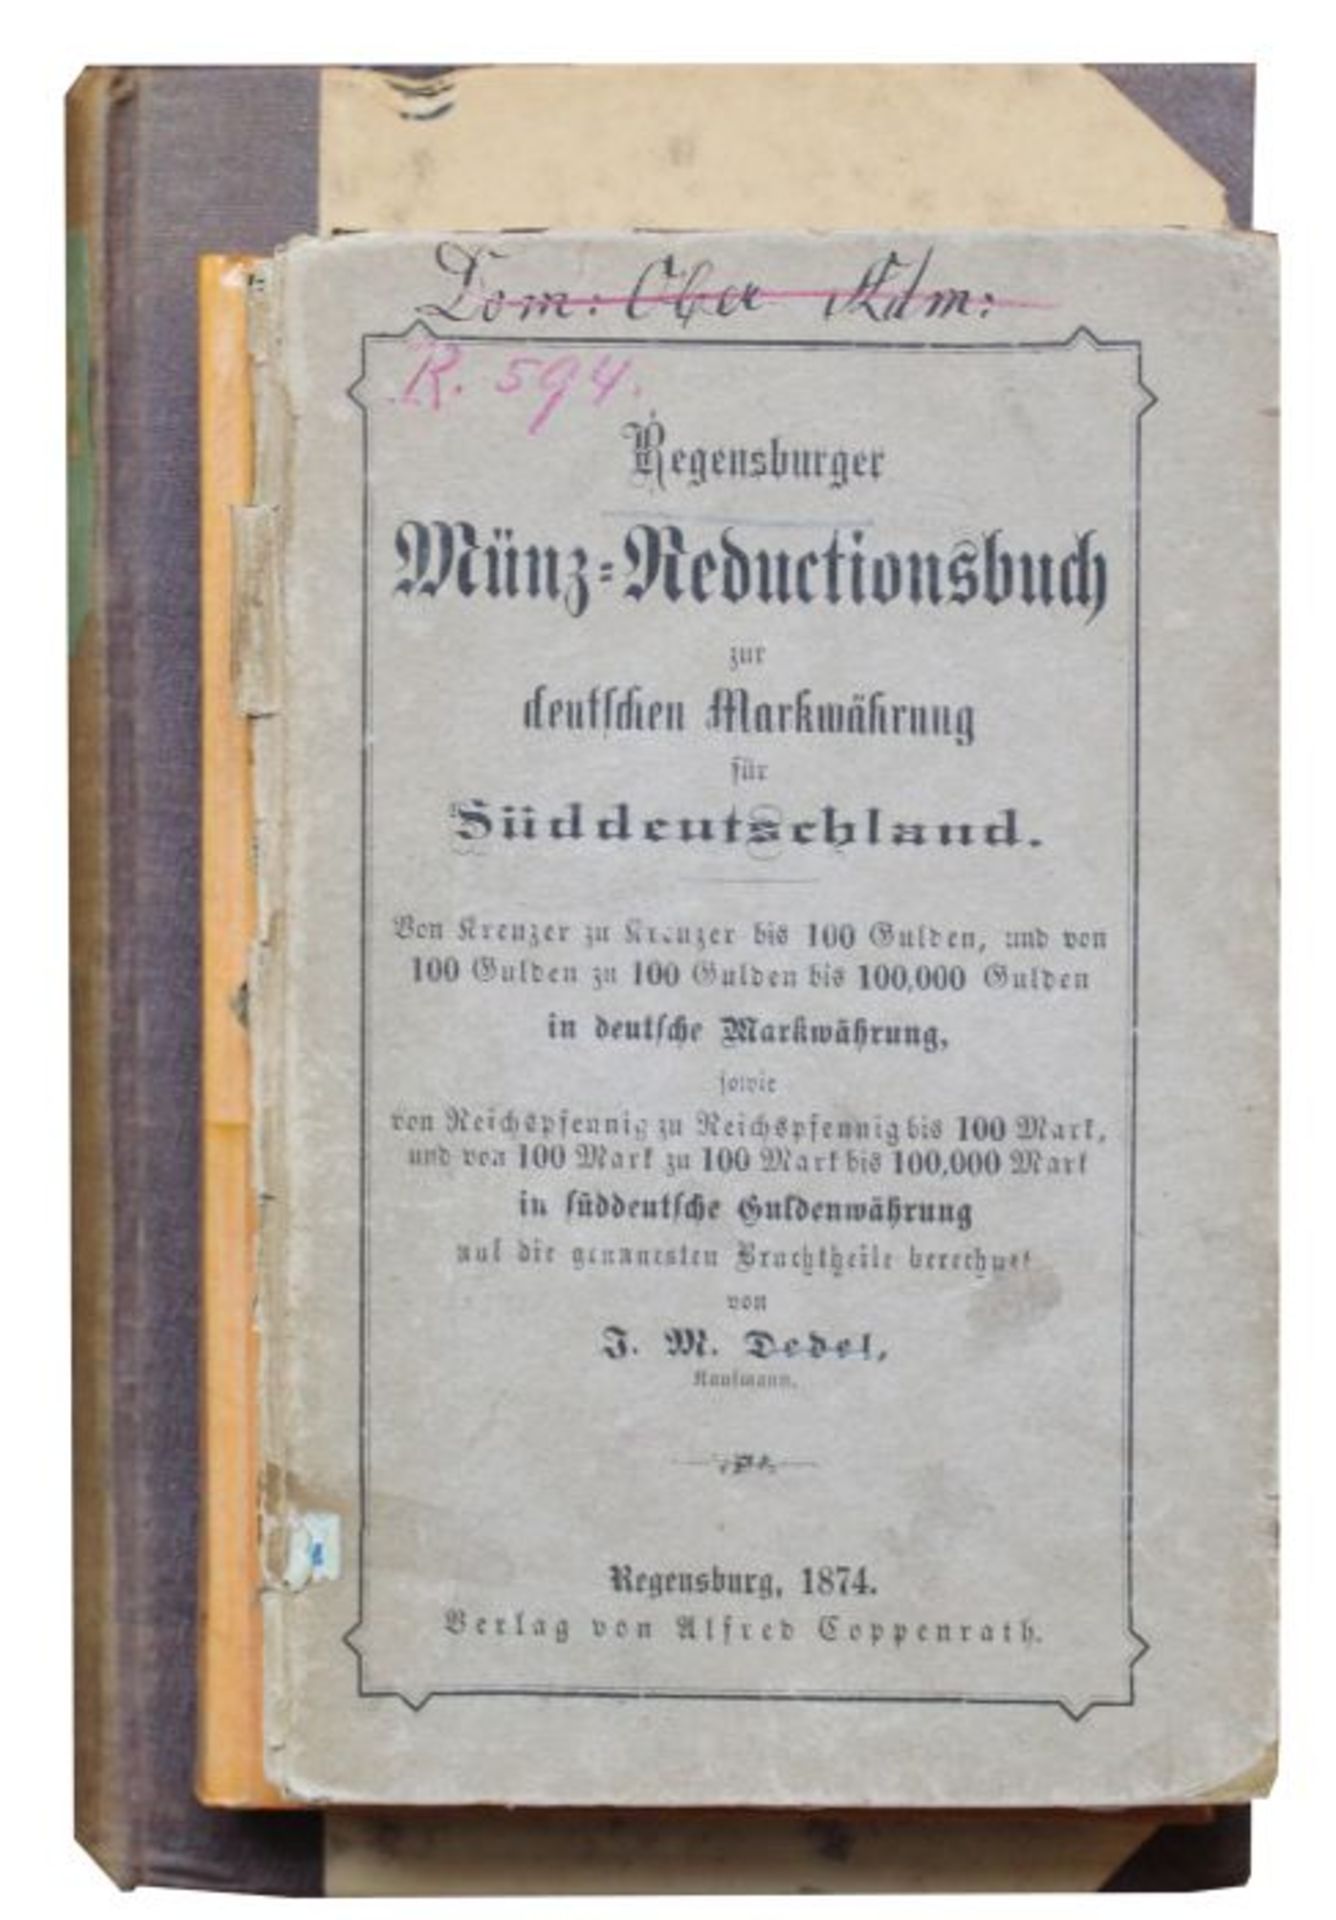 Lot Bücher aus dem 19.Jahrhundert 1.Regensburger Münz-Reductions zur deutschen Markwährung für